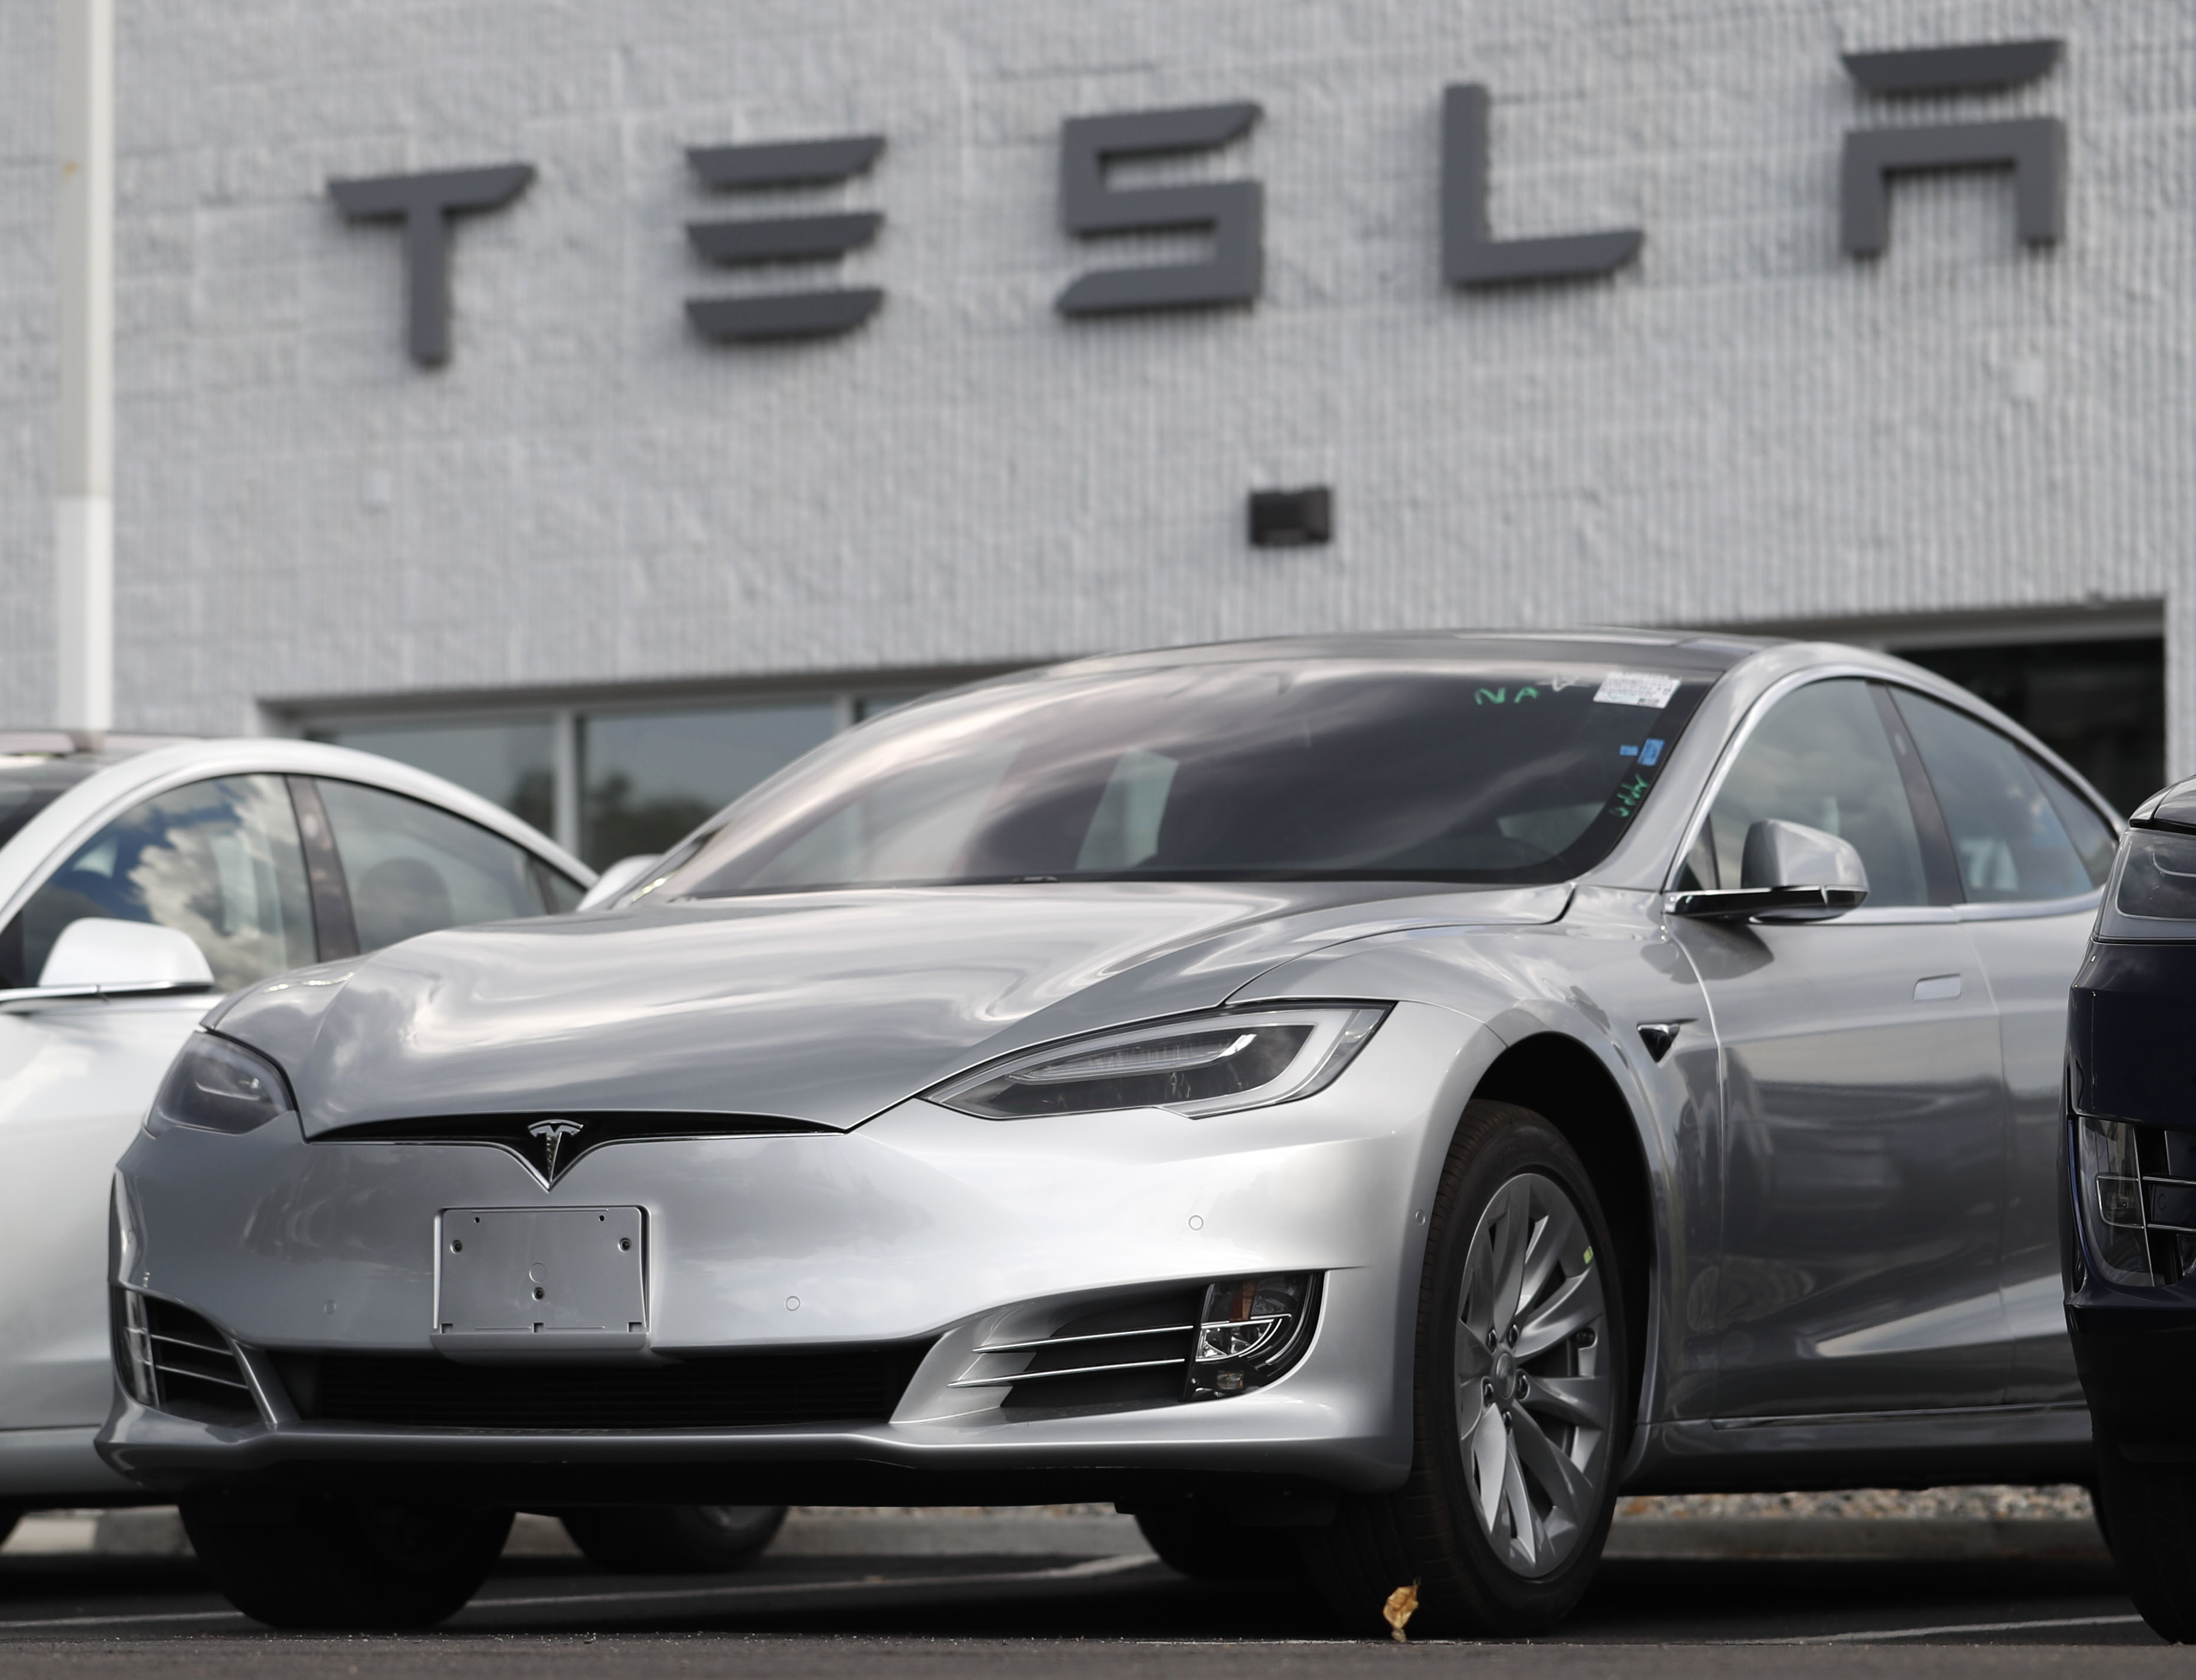 EEUU investiga el sistema de piloto automático de Tesla tras una serie de accidentes